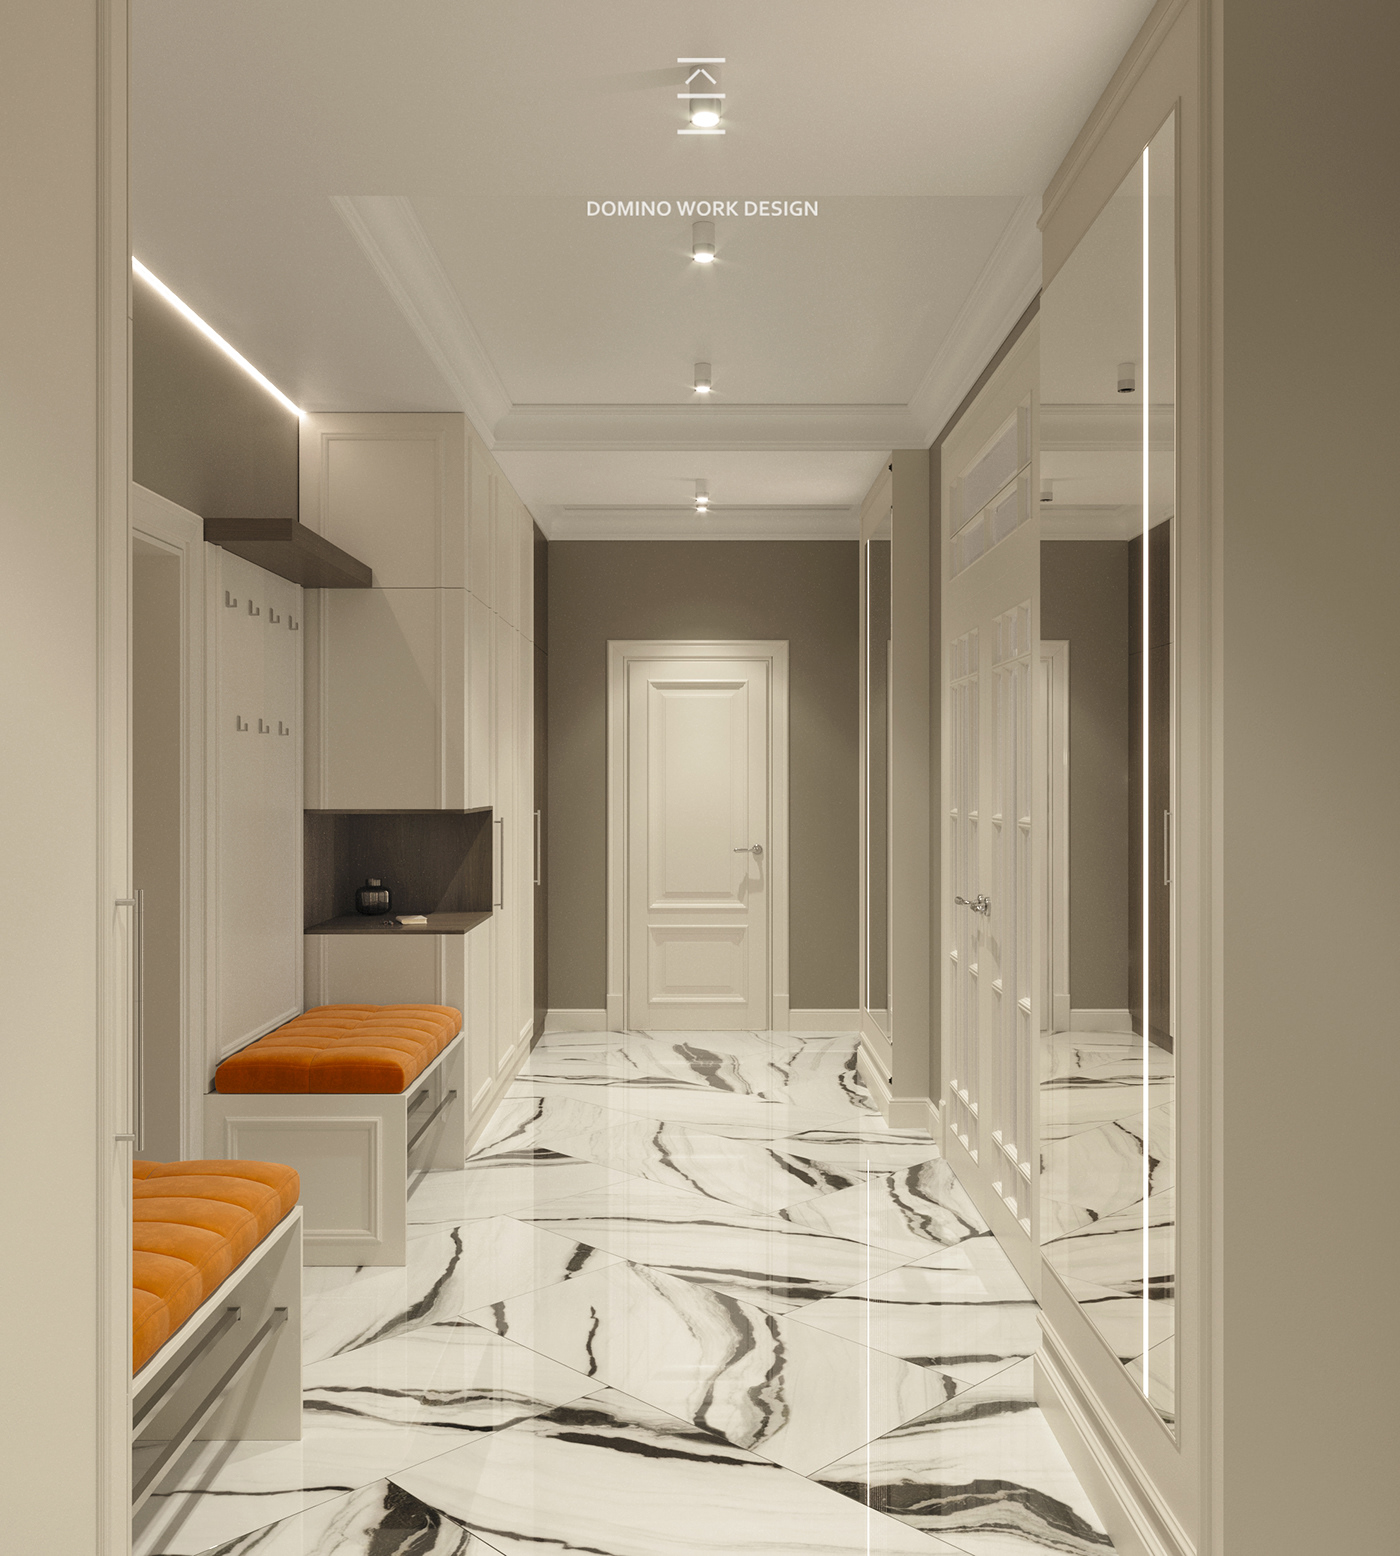 3ds max design Interior interior design  interiordesign kitchen Render visualization